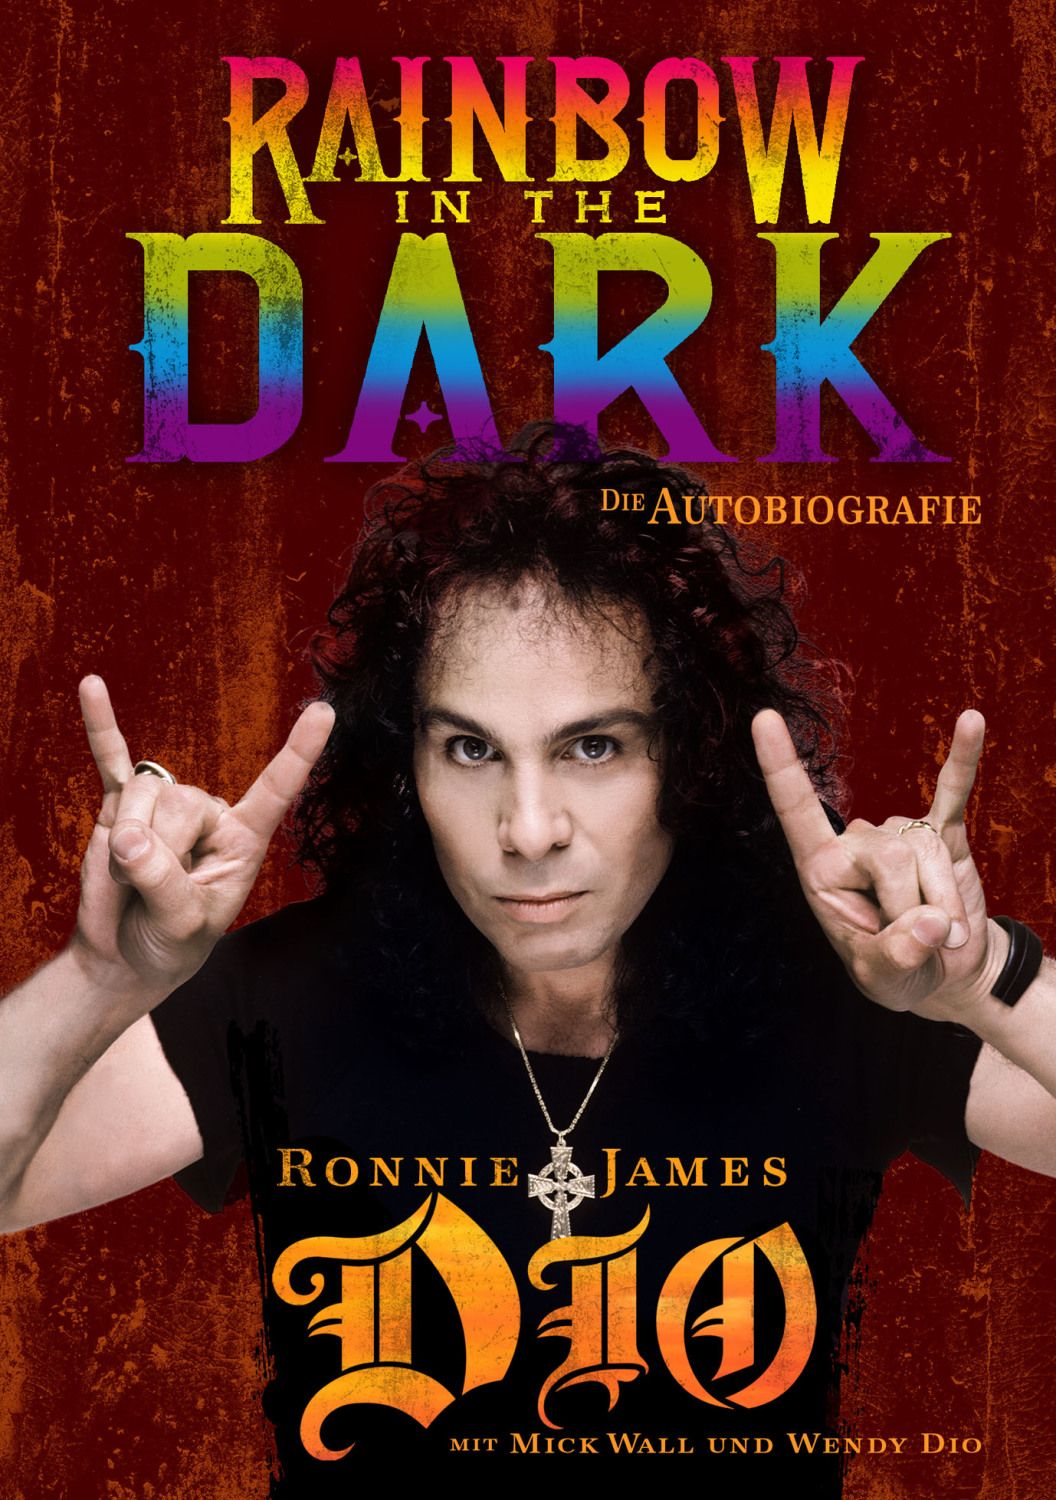 "Rainbow In The Dark - Die Autobiografie" erscheint Ende August auf Deutsch